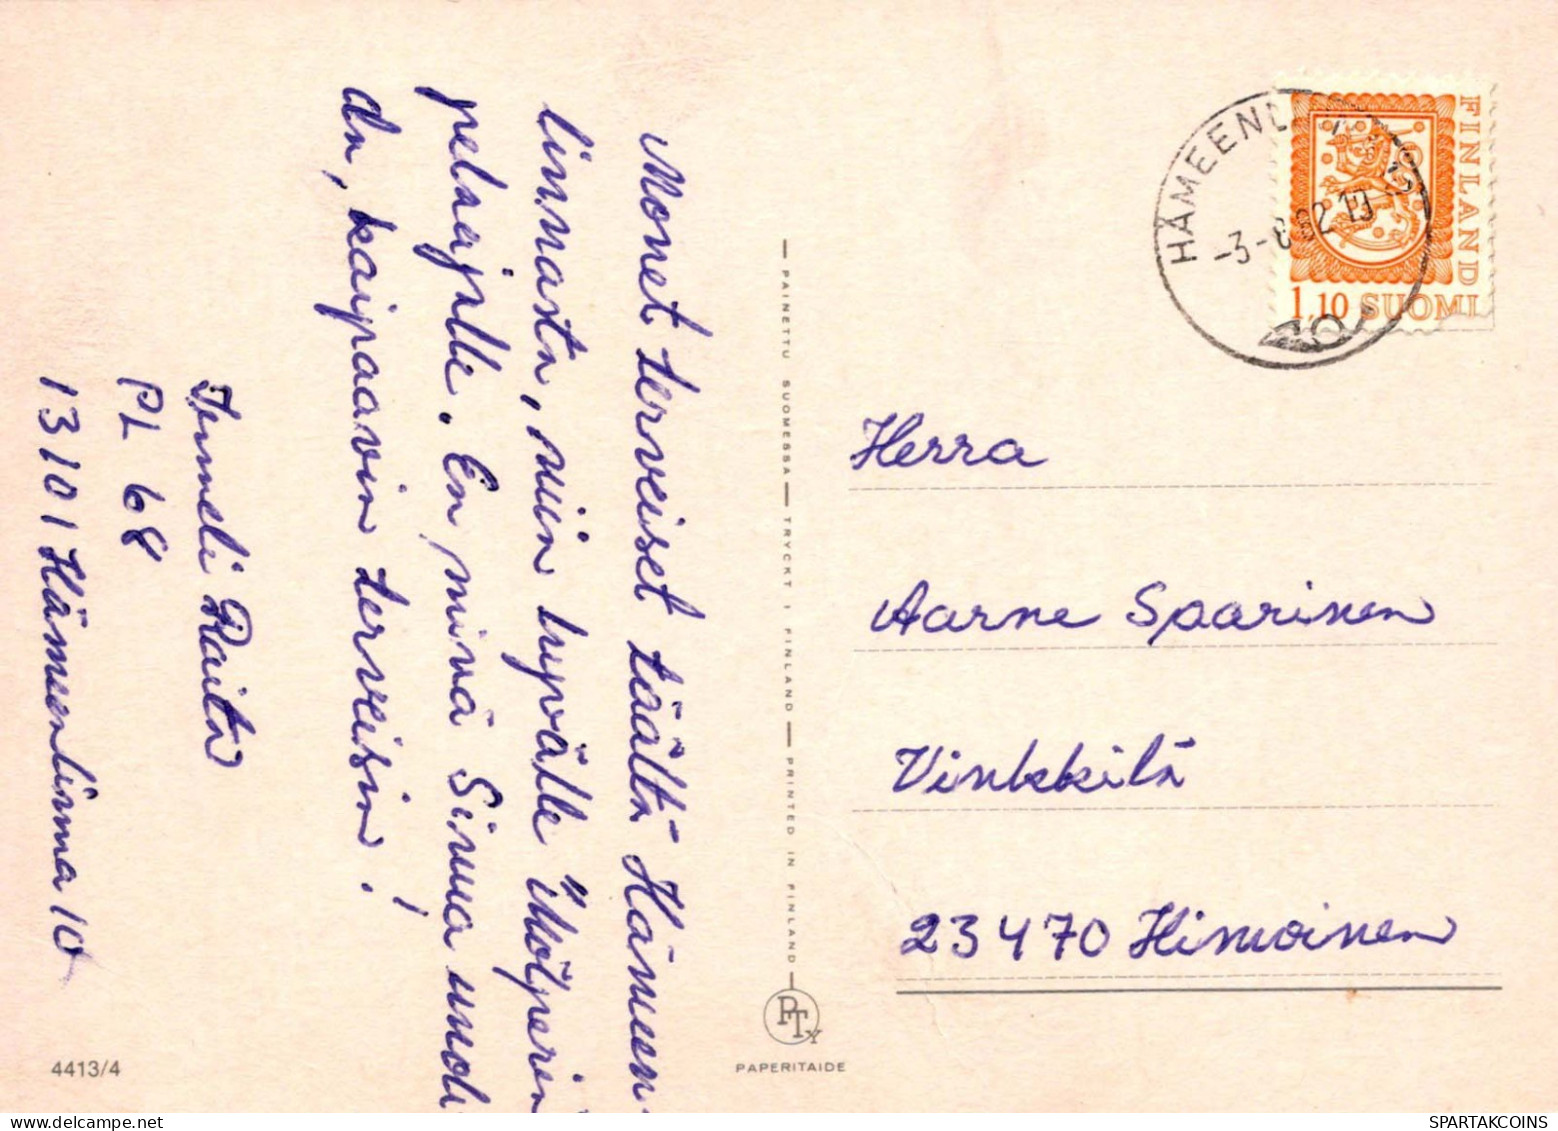 KINDER KINDER Szene S Landschafts Vintage Postal CPSM #PBT565.DE - Escenas & Paisajes